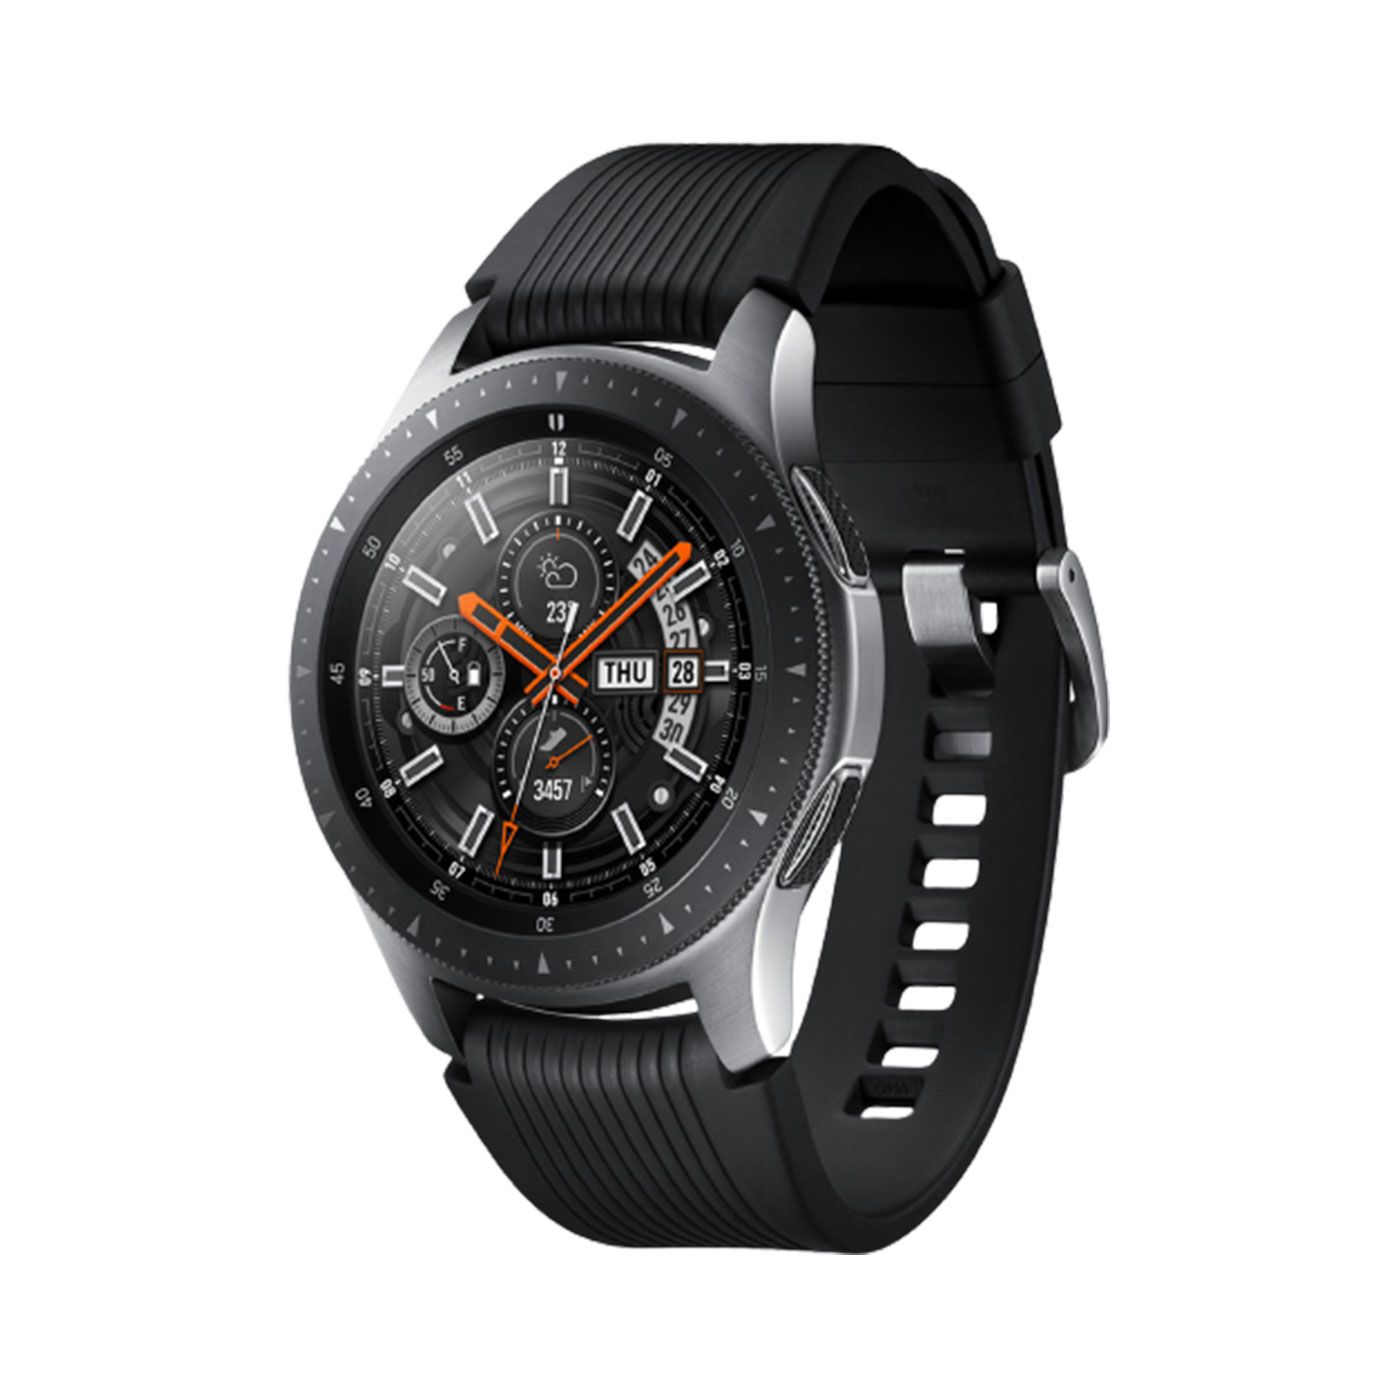 ساعت هوشمند سامسونگ مدل Galaxy Watch SM-R800 بند لاستیکی -  - 1